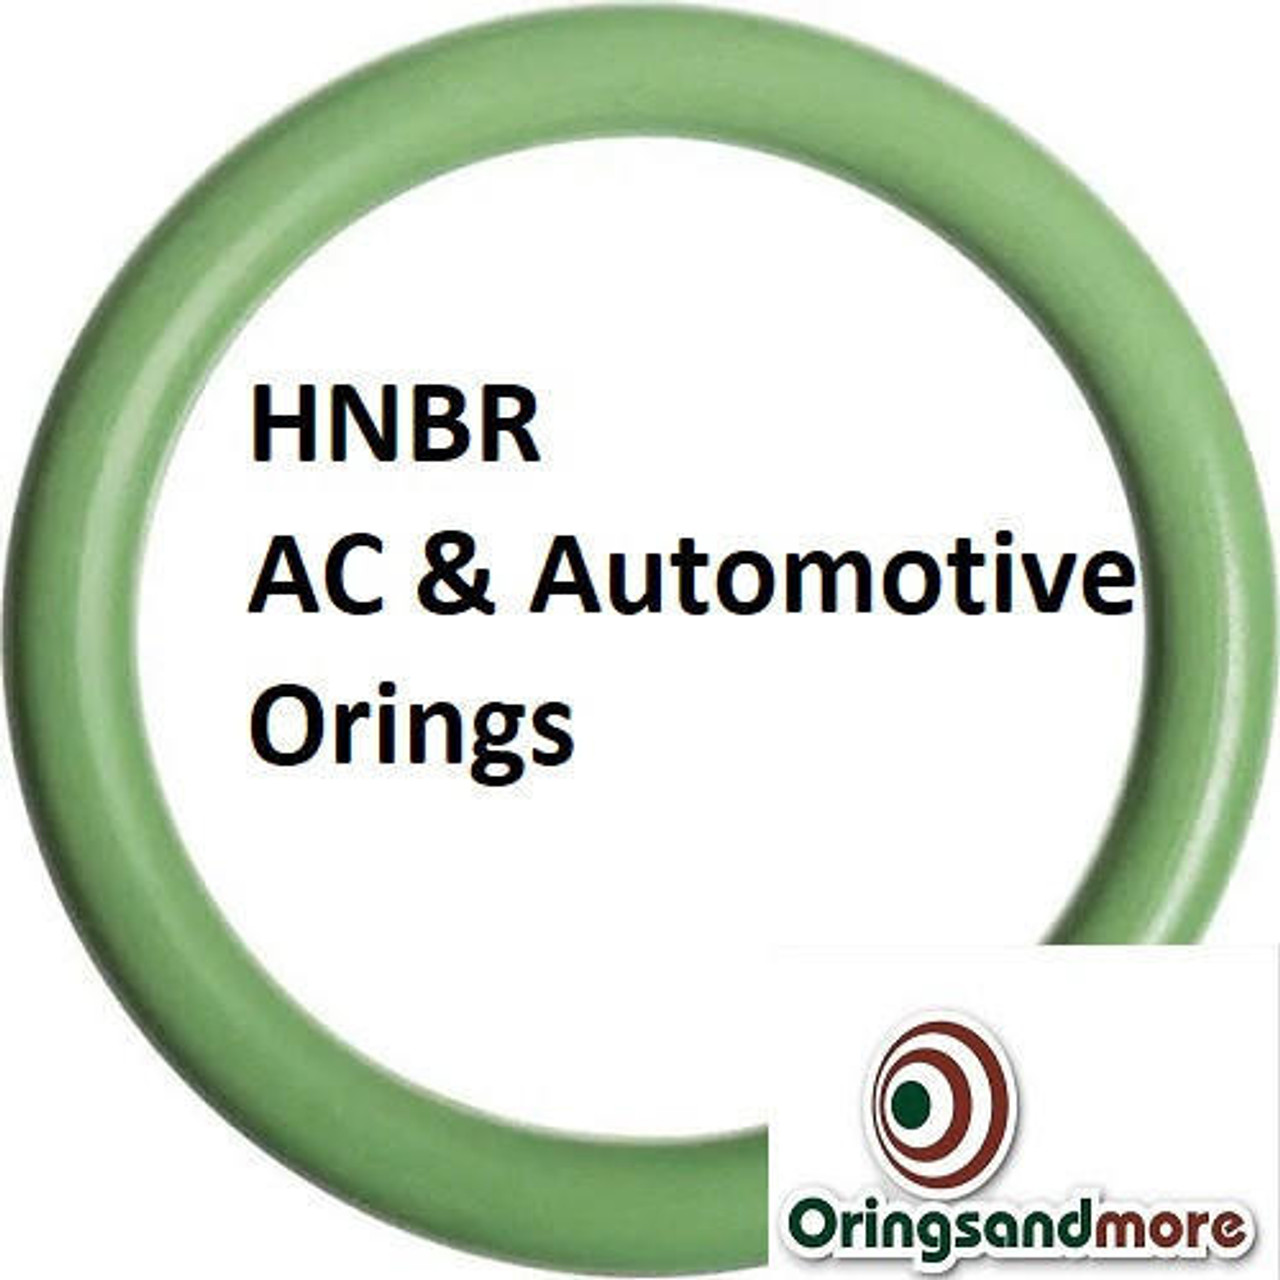 HNBR Orings  # 026-70D Green  Minimum 10 pcs